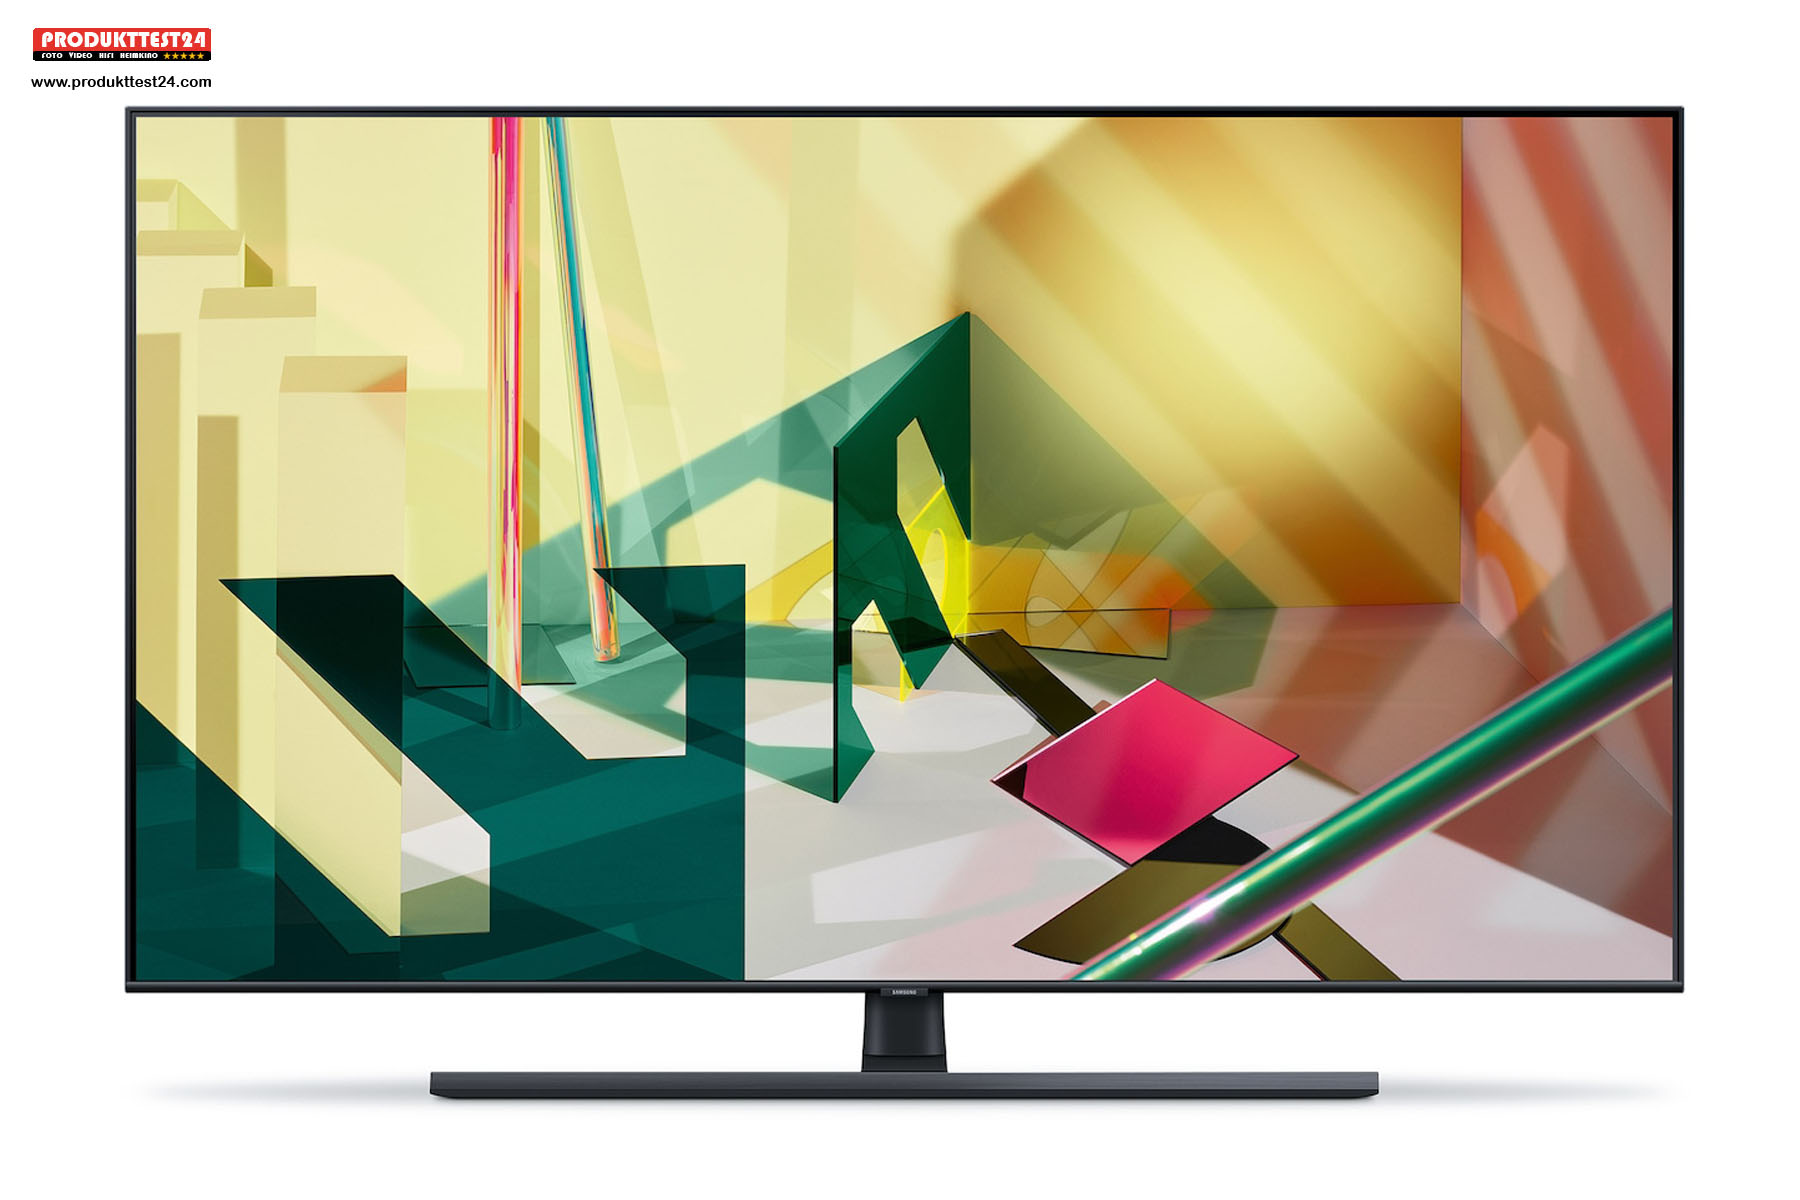 Der 65 Zoll große QLED 4K-Fernseher aus der neuen Q70T-Serie